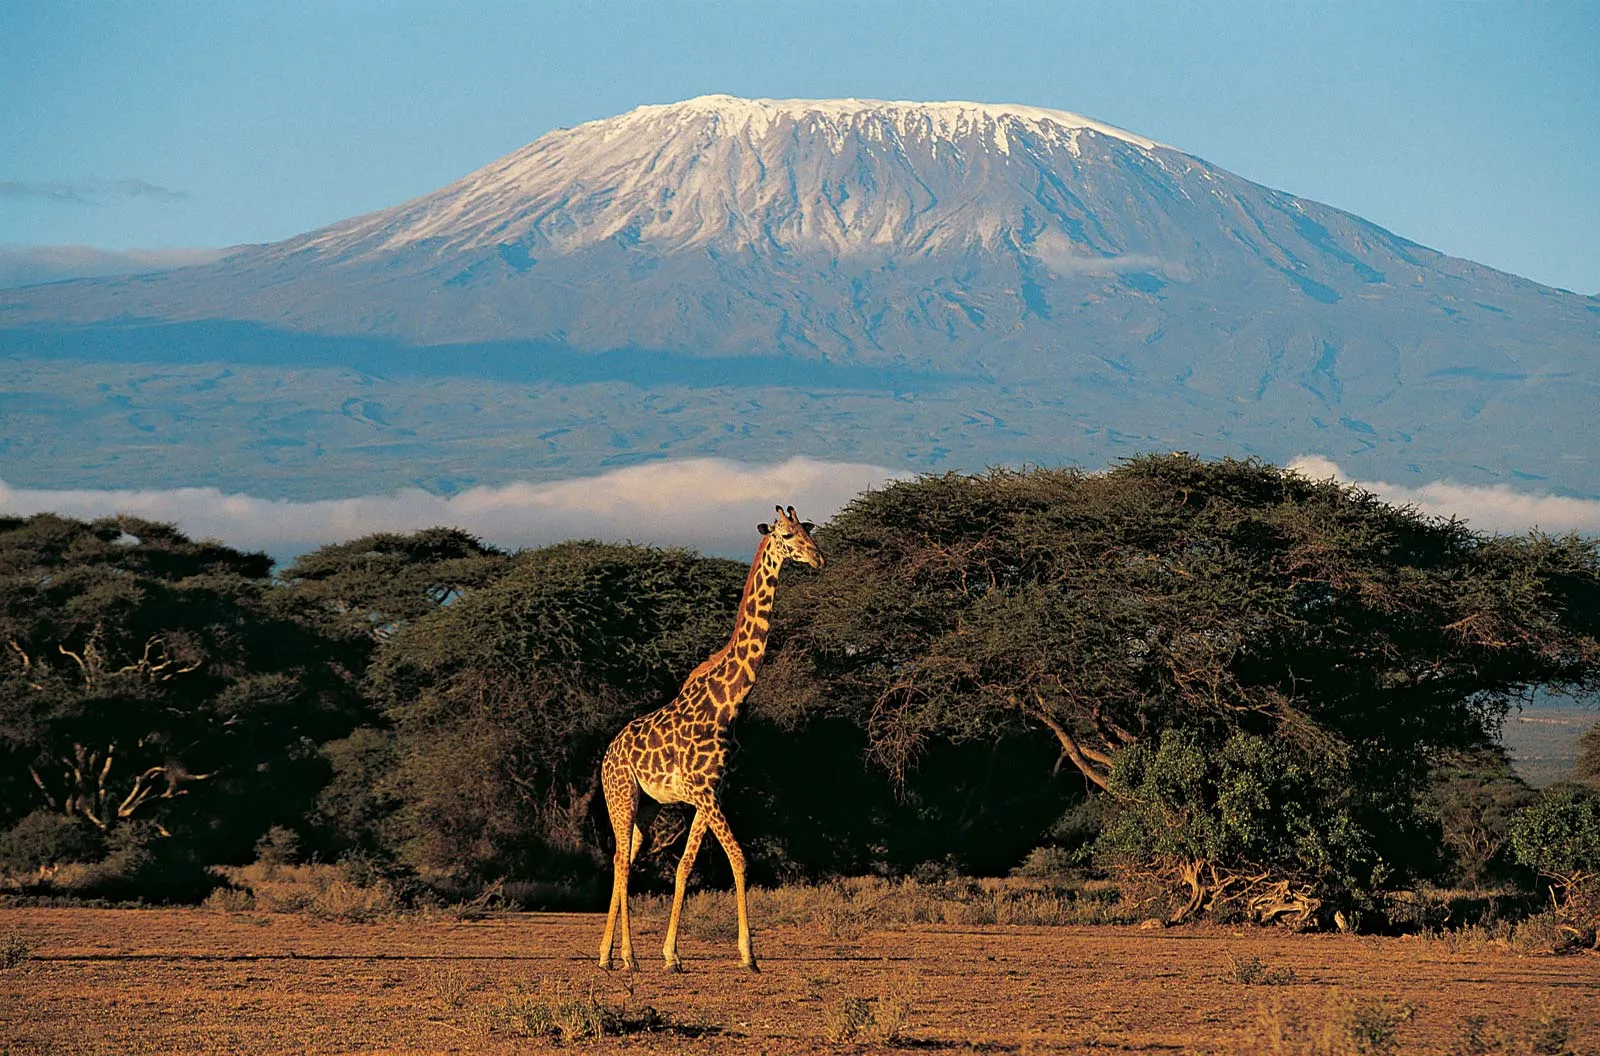 Kilimanjaro is in Tanzania